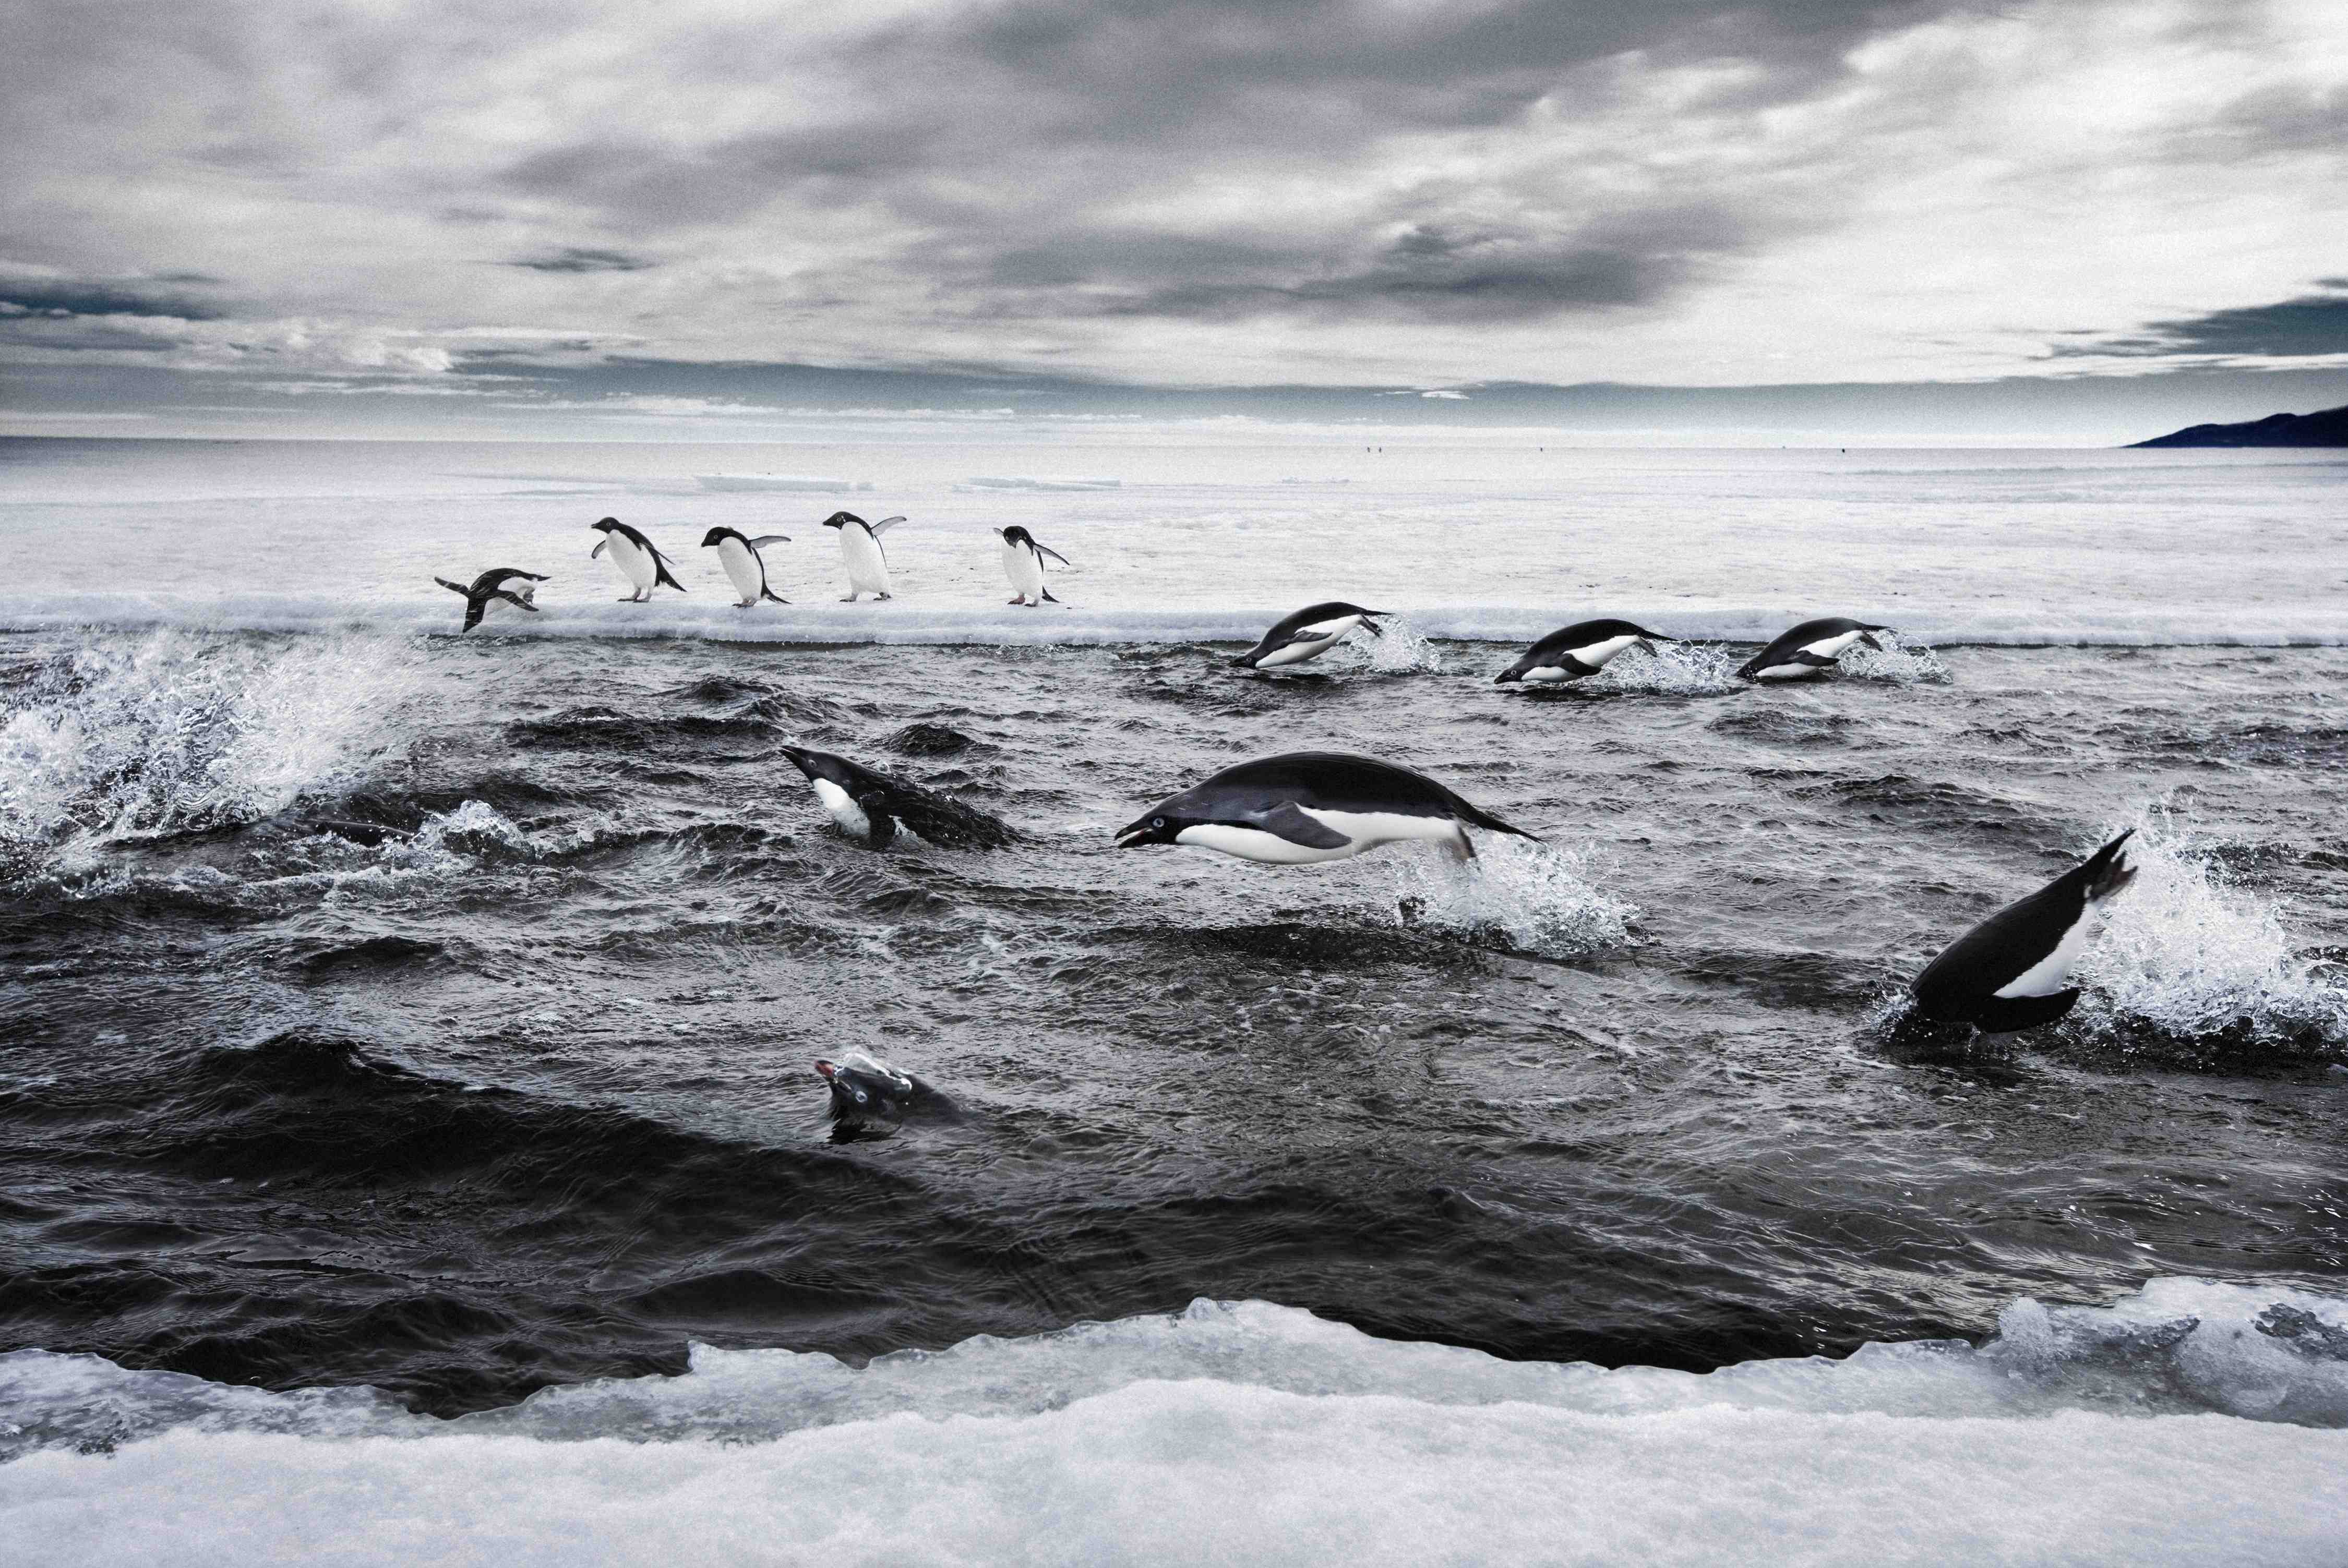  Crean la mayor reserva marina natural en la Antártida